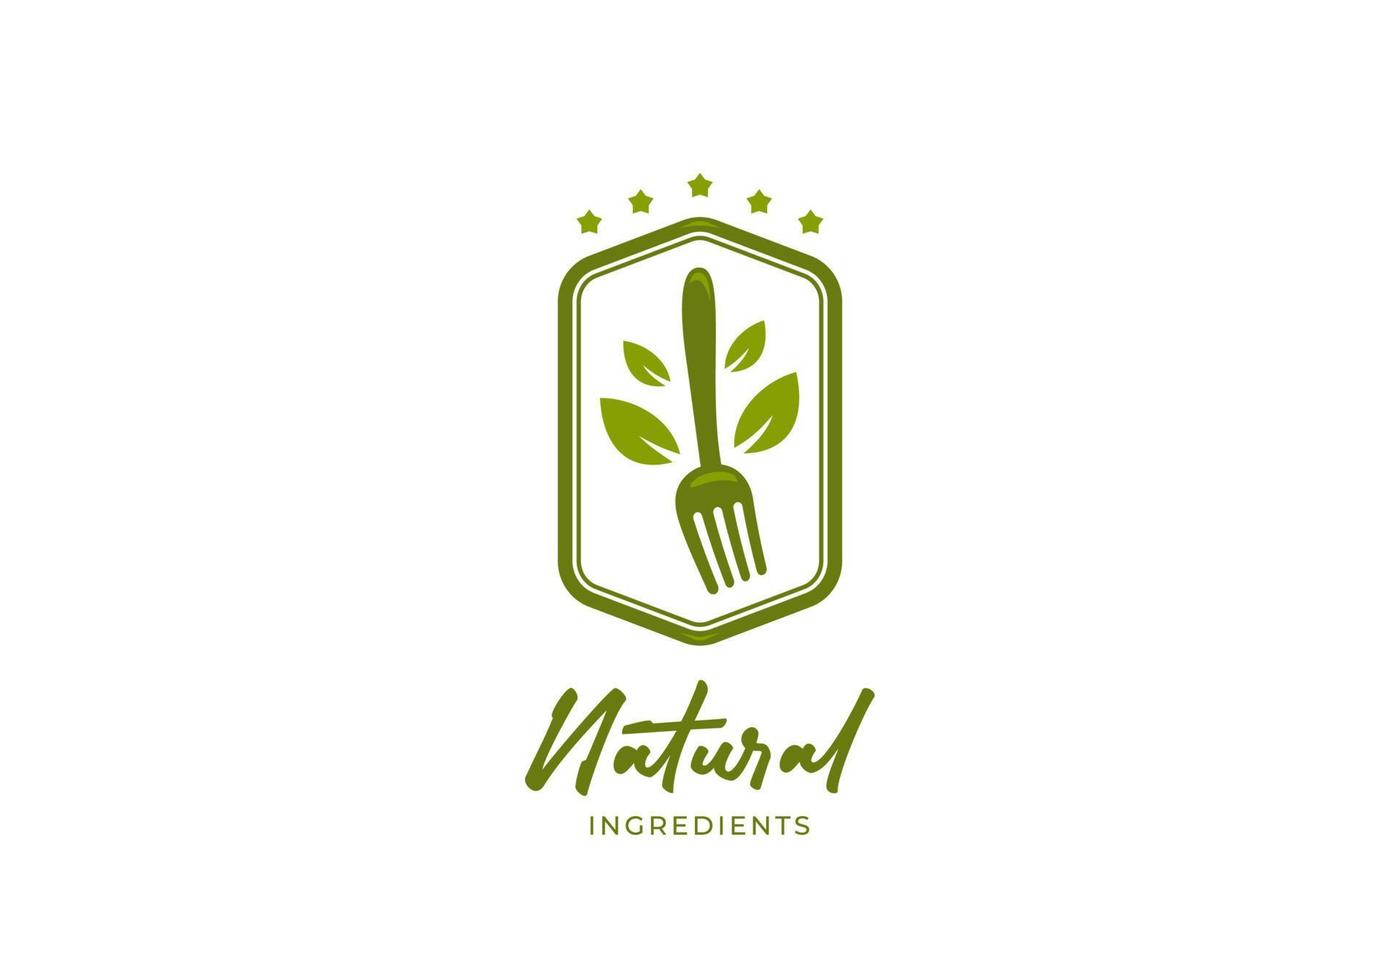 Emblema do logotipo de ingredientes naturais, logotipo de alimentos frescos e orgânicos com garfo e folha verde vetor